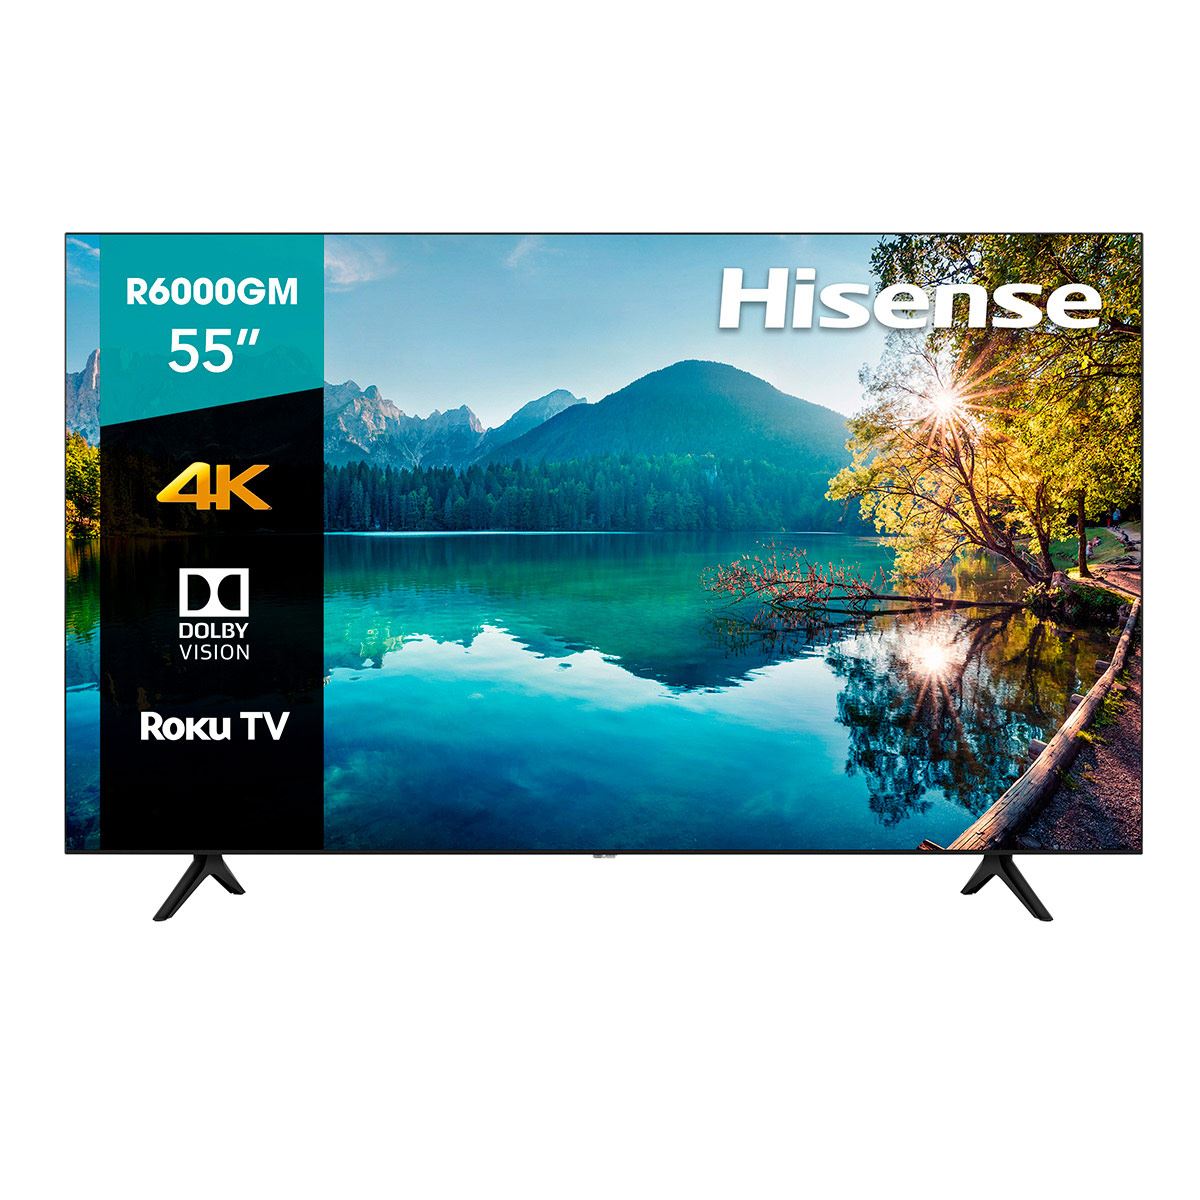 Smart TV HISENSE 55 pulgadas 55R6000GM 4K UHD ROKU LED